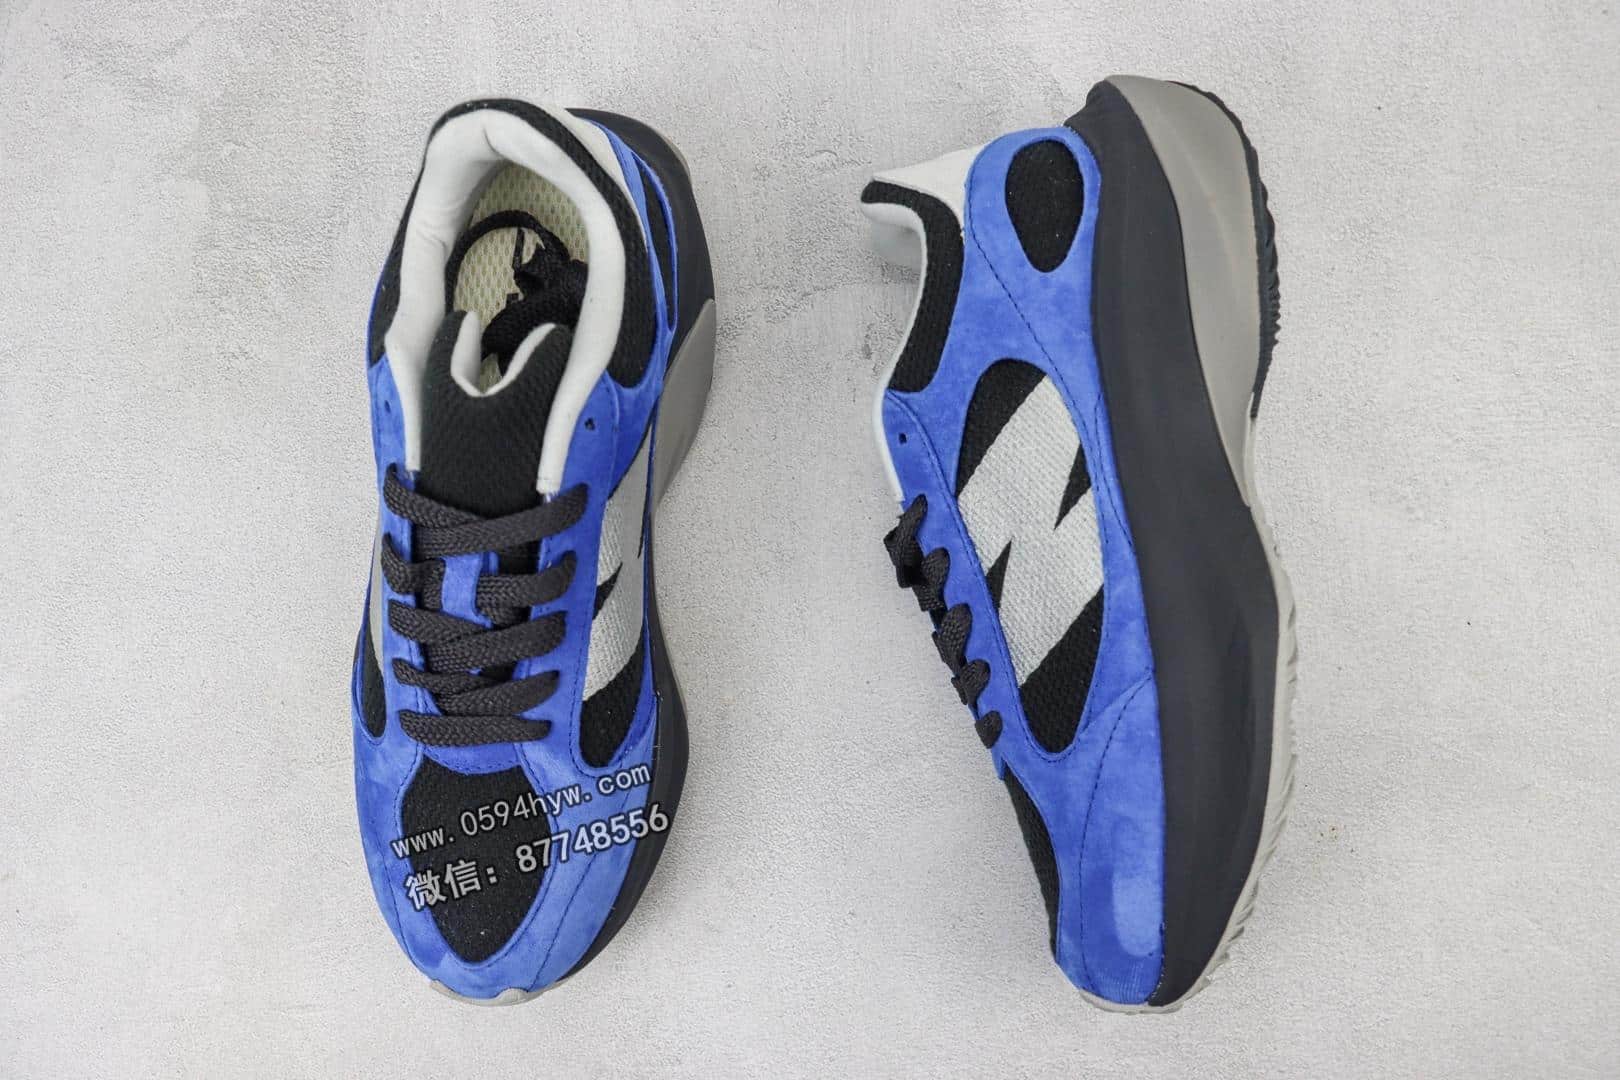 品牌：New Balance
系列：Warped Runner
鞋子类型：复古老爹风休闲运动慢跑鞋
颜色：黑蓝
货号：UWRPDTBK